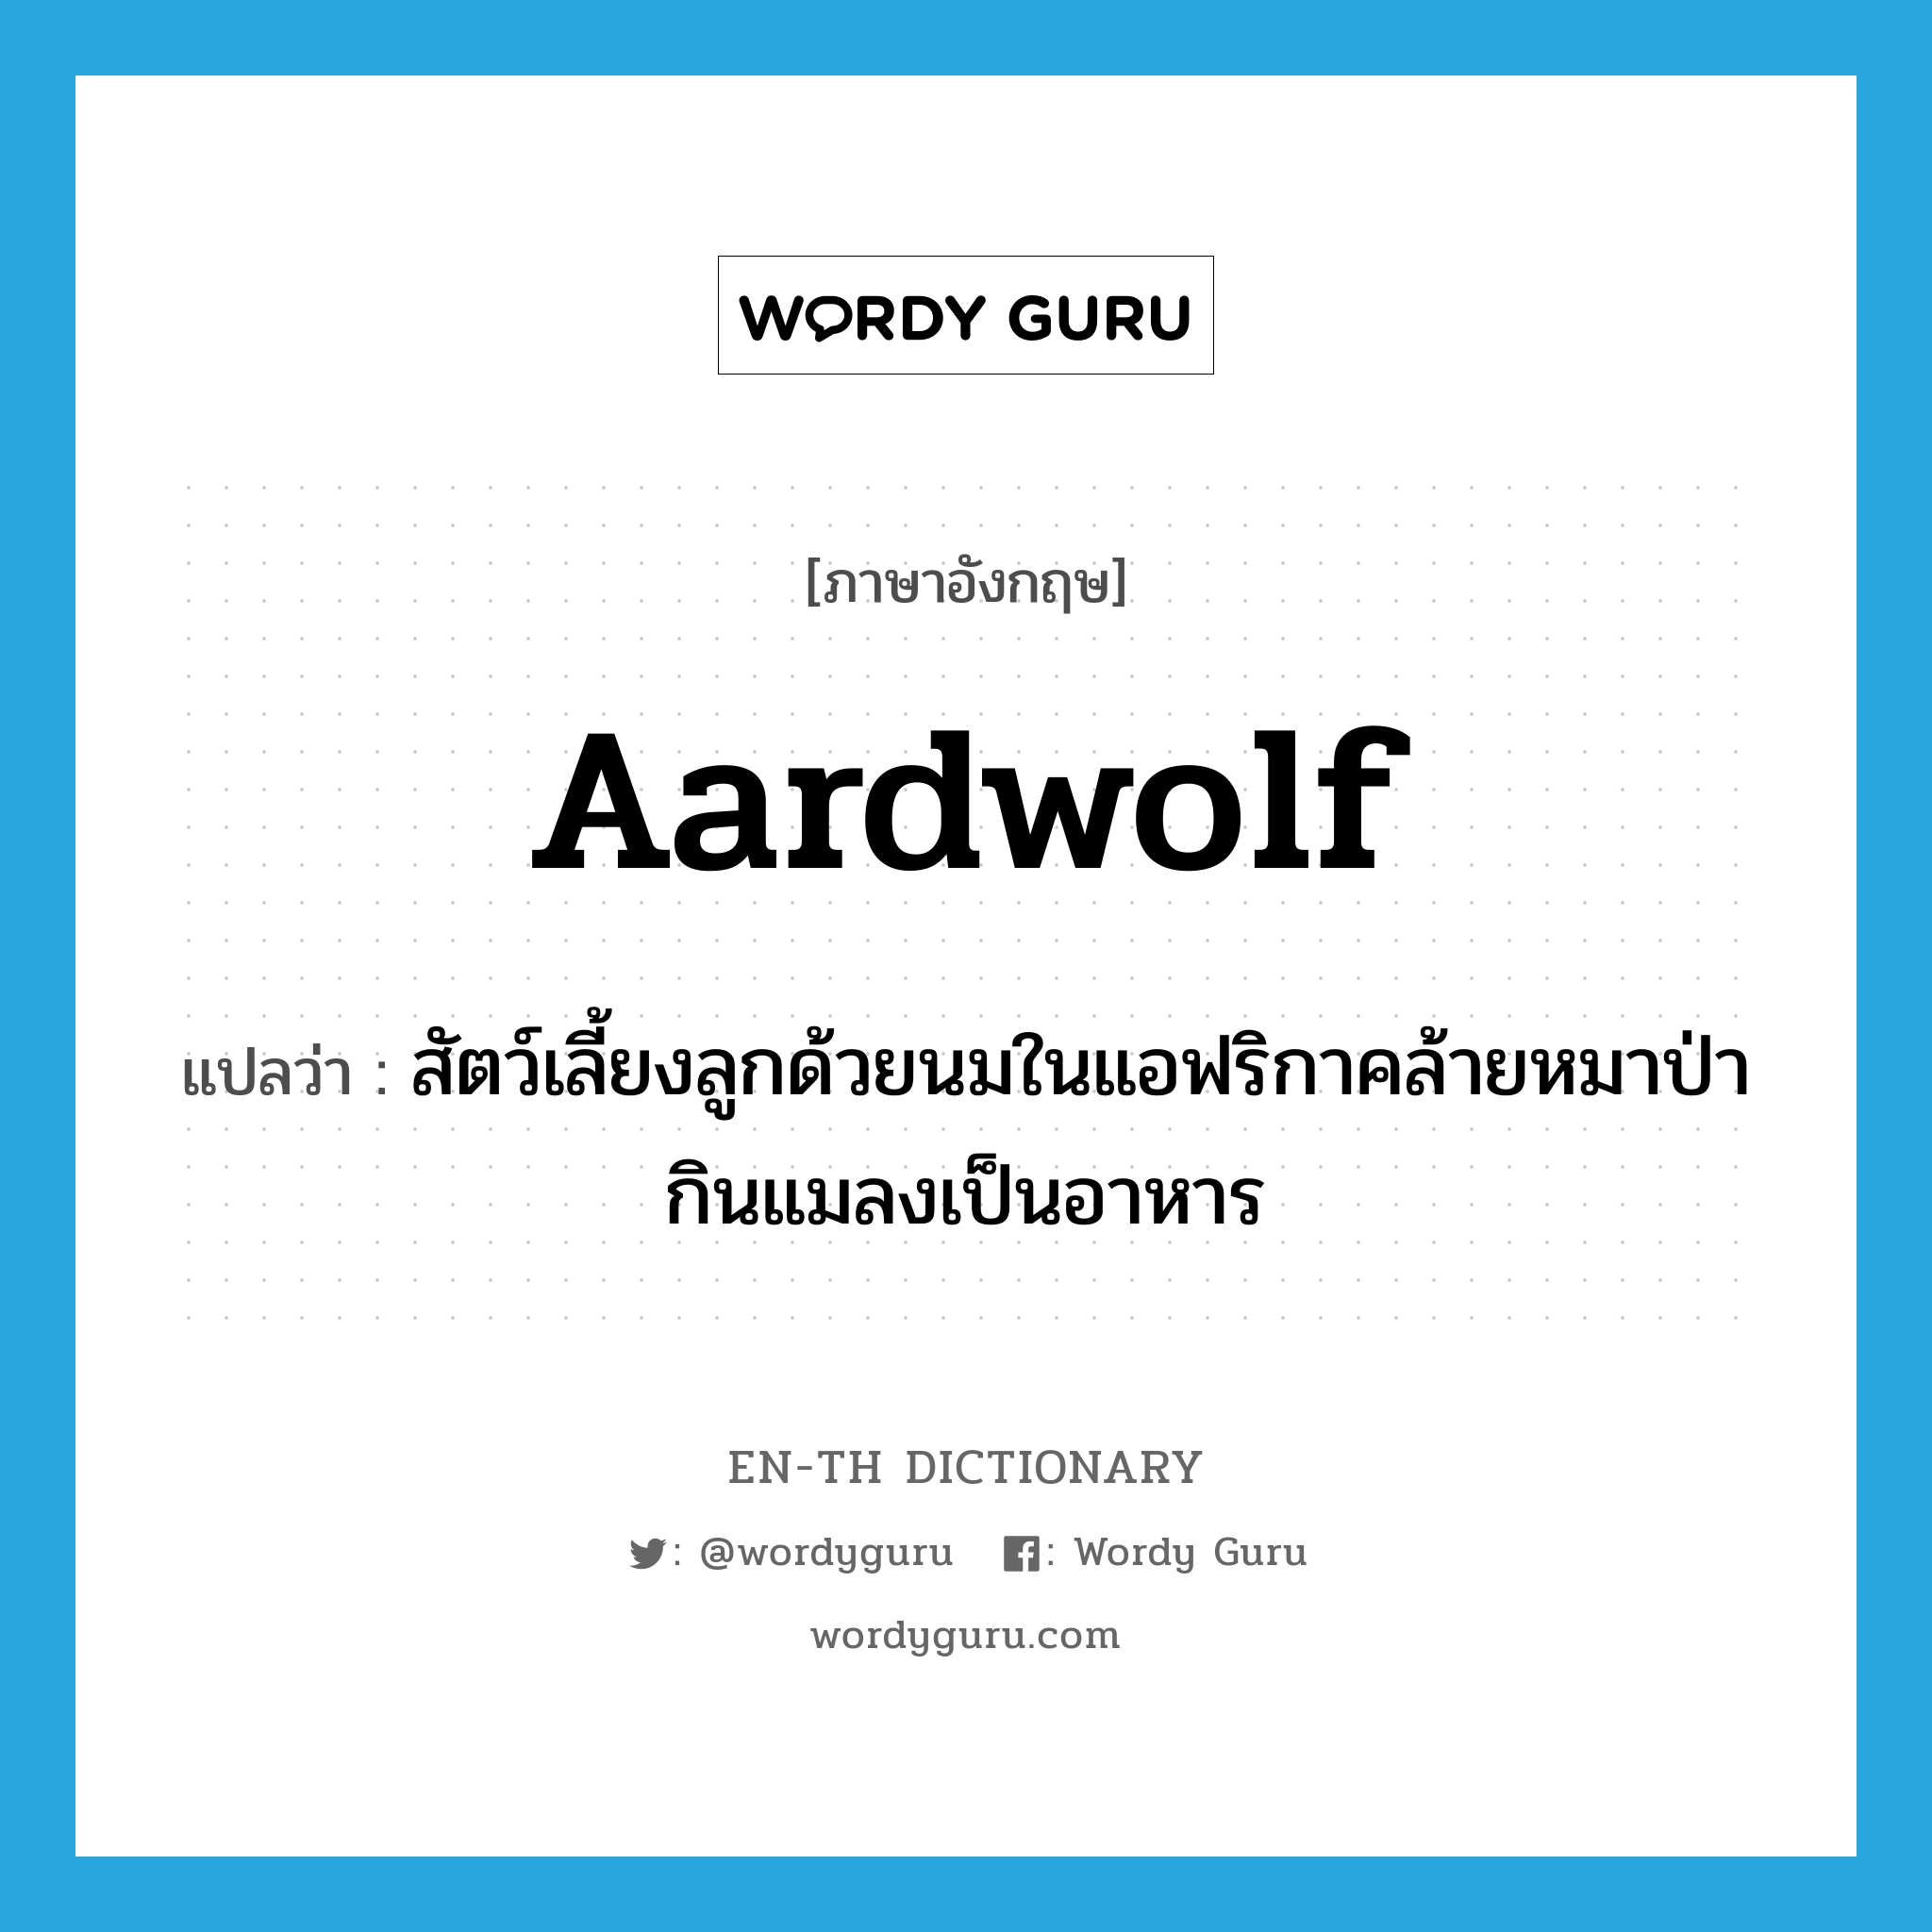 aardwolf แปลว่า?, คำศัพท์ภาษาอังกฤษ aardwolf แปลว่า สัตว์เลี้ยงลูกด้วยนมในแอฟริกาคล้ายหมาป่า กินแมลงเป็นอาหาร ประเภท N หมวด N